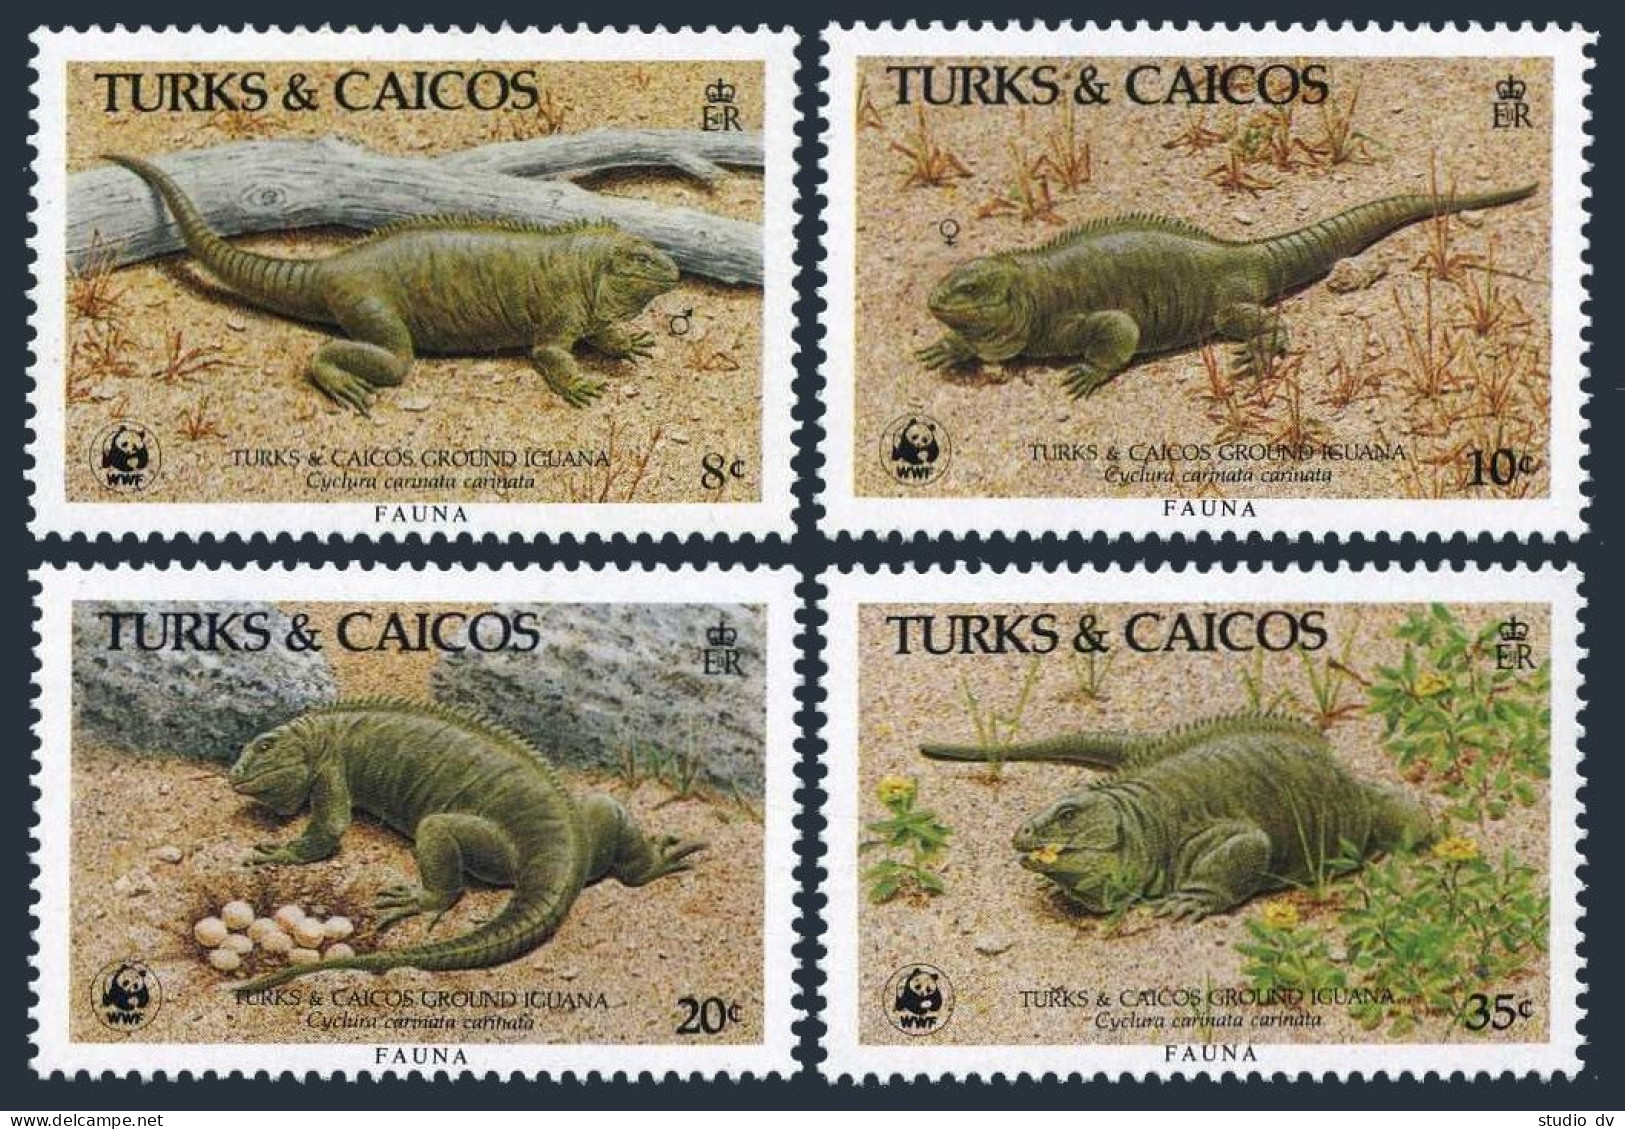 Turks & Caicos 710-713, MNH. Michel 777-780. WWF 1986. Ground Iguanas. - Turks & Caicos